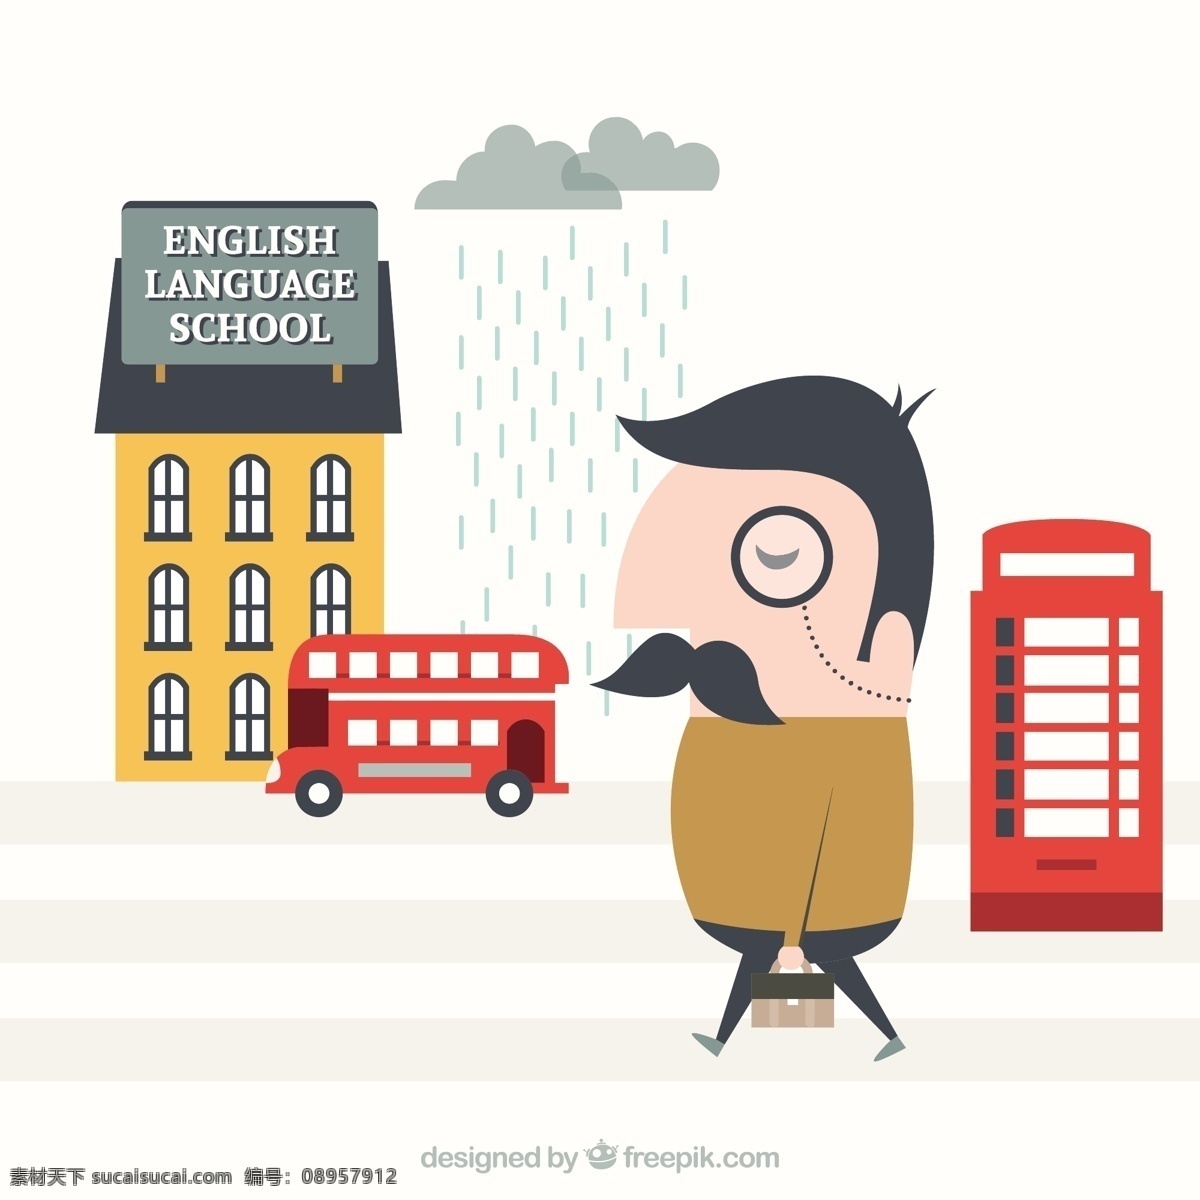 学习 英语 插图 学校 城市 教育 卡通 伦敦 街头 语言 英国 白色